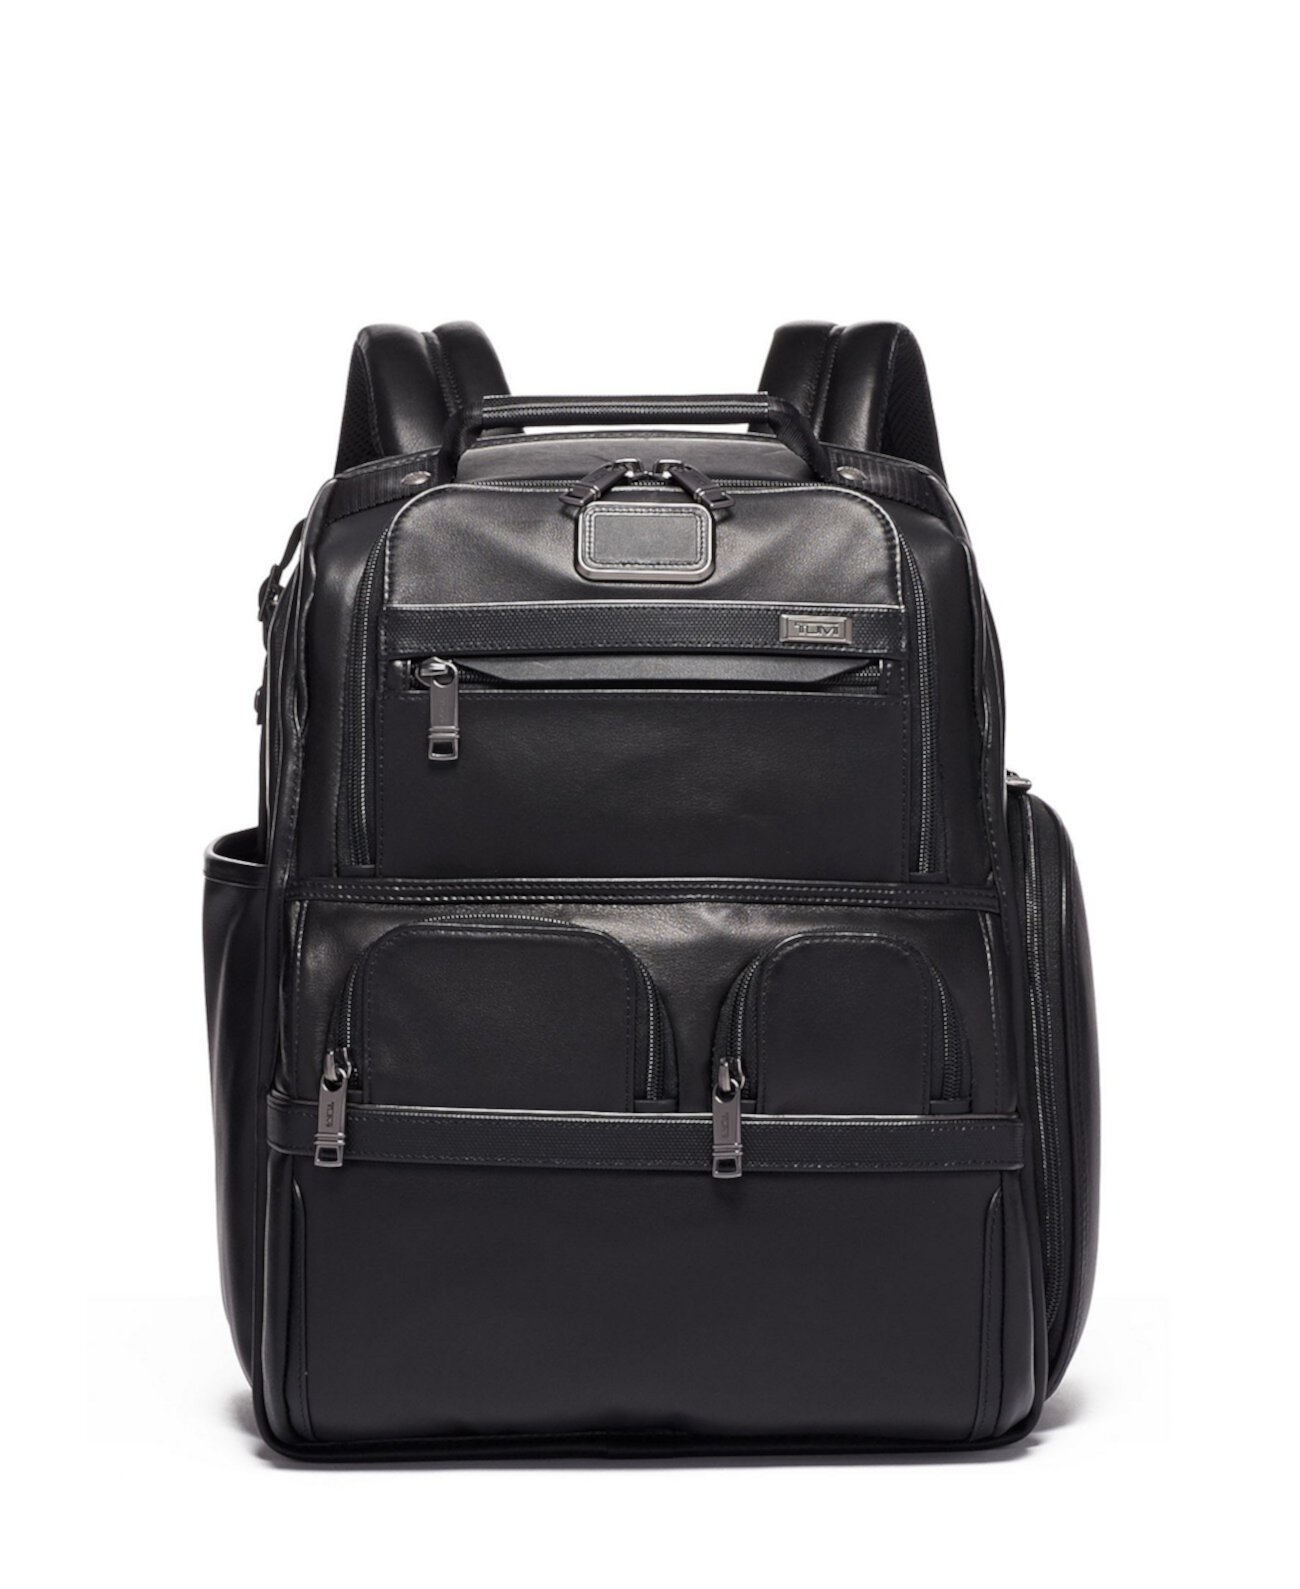 Компактный кожаный рюкзак-портфель для ноутбука Alpha 3 Tumi